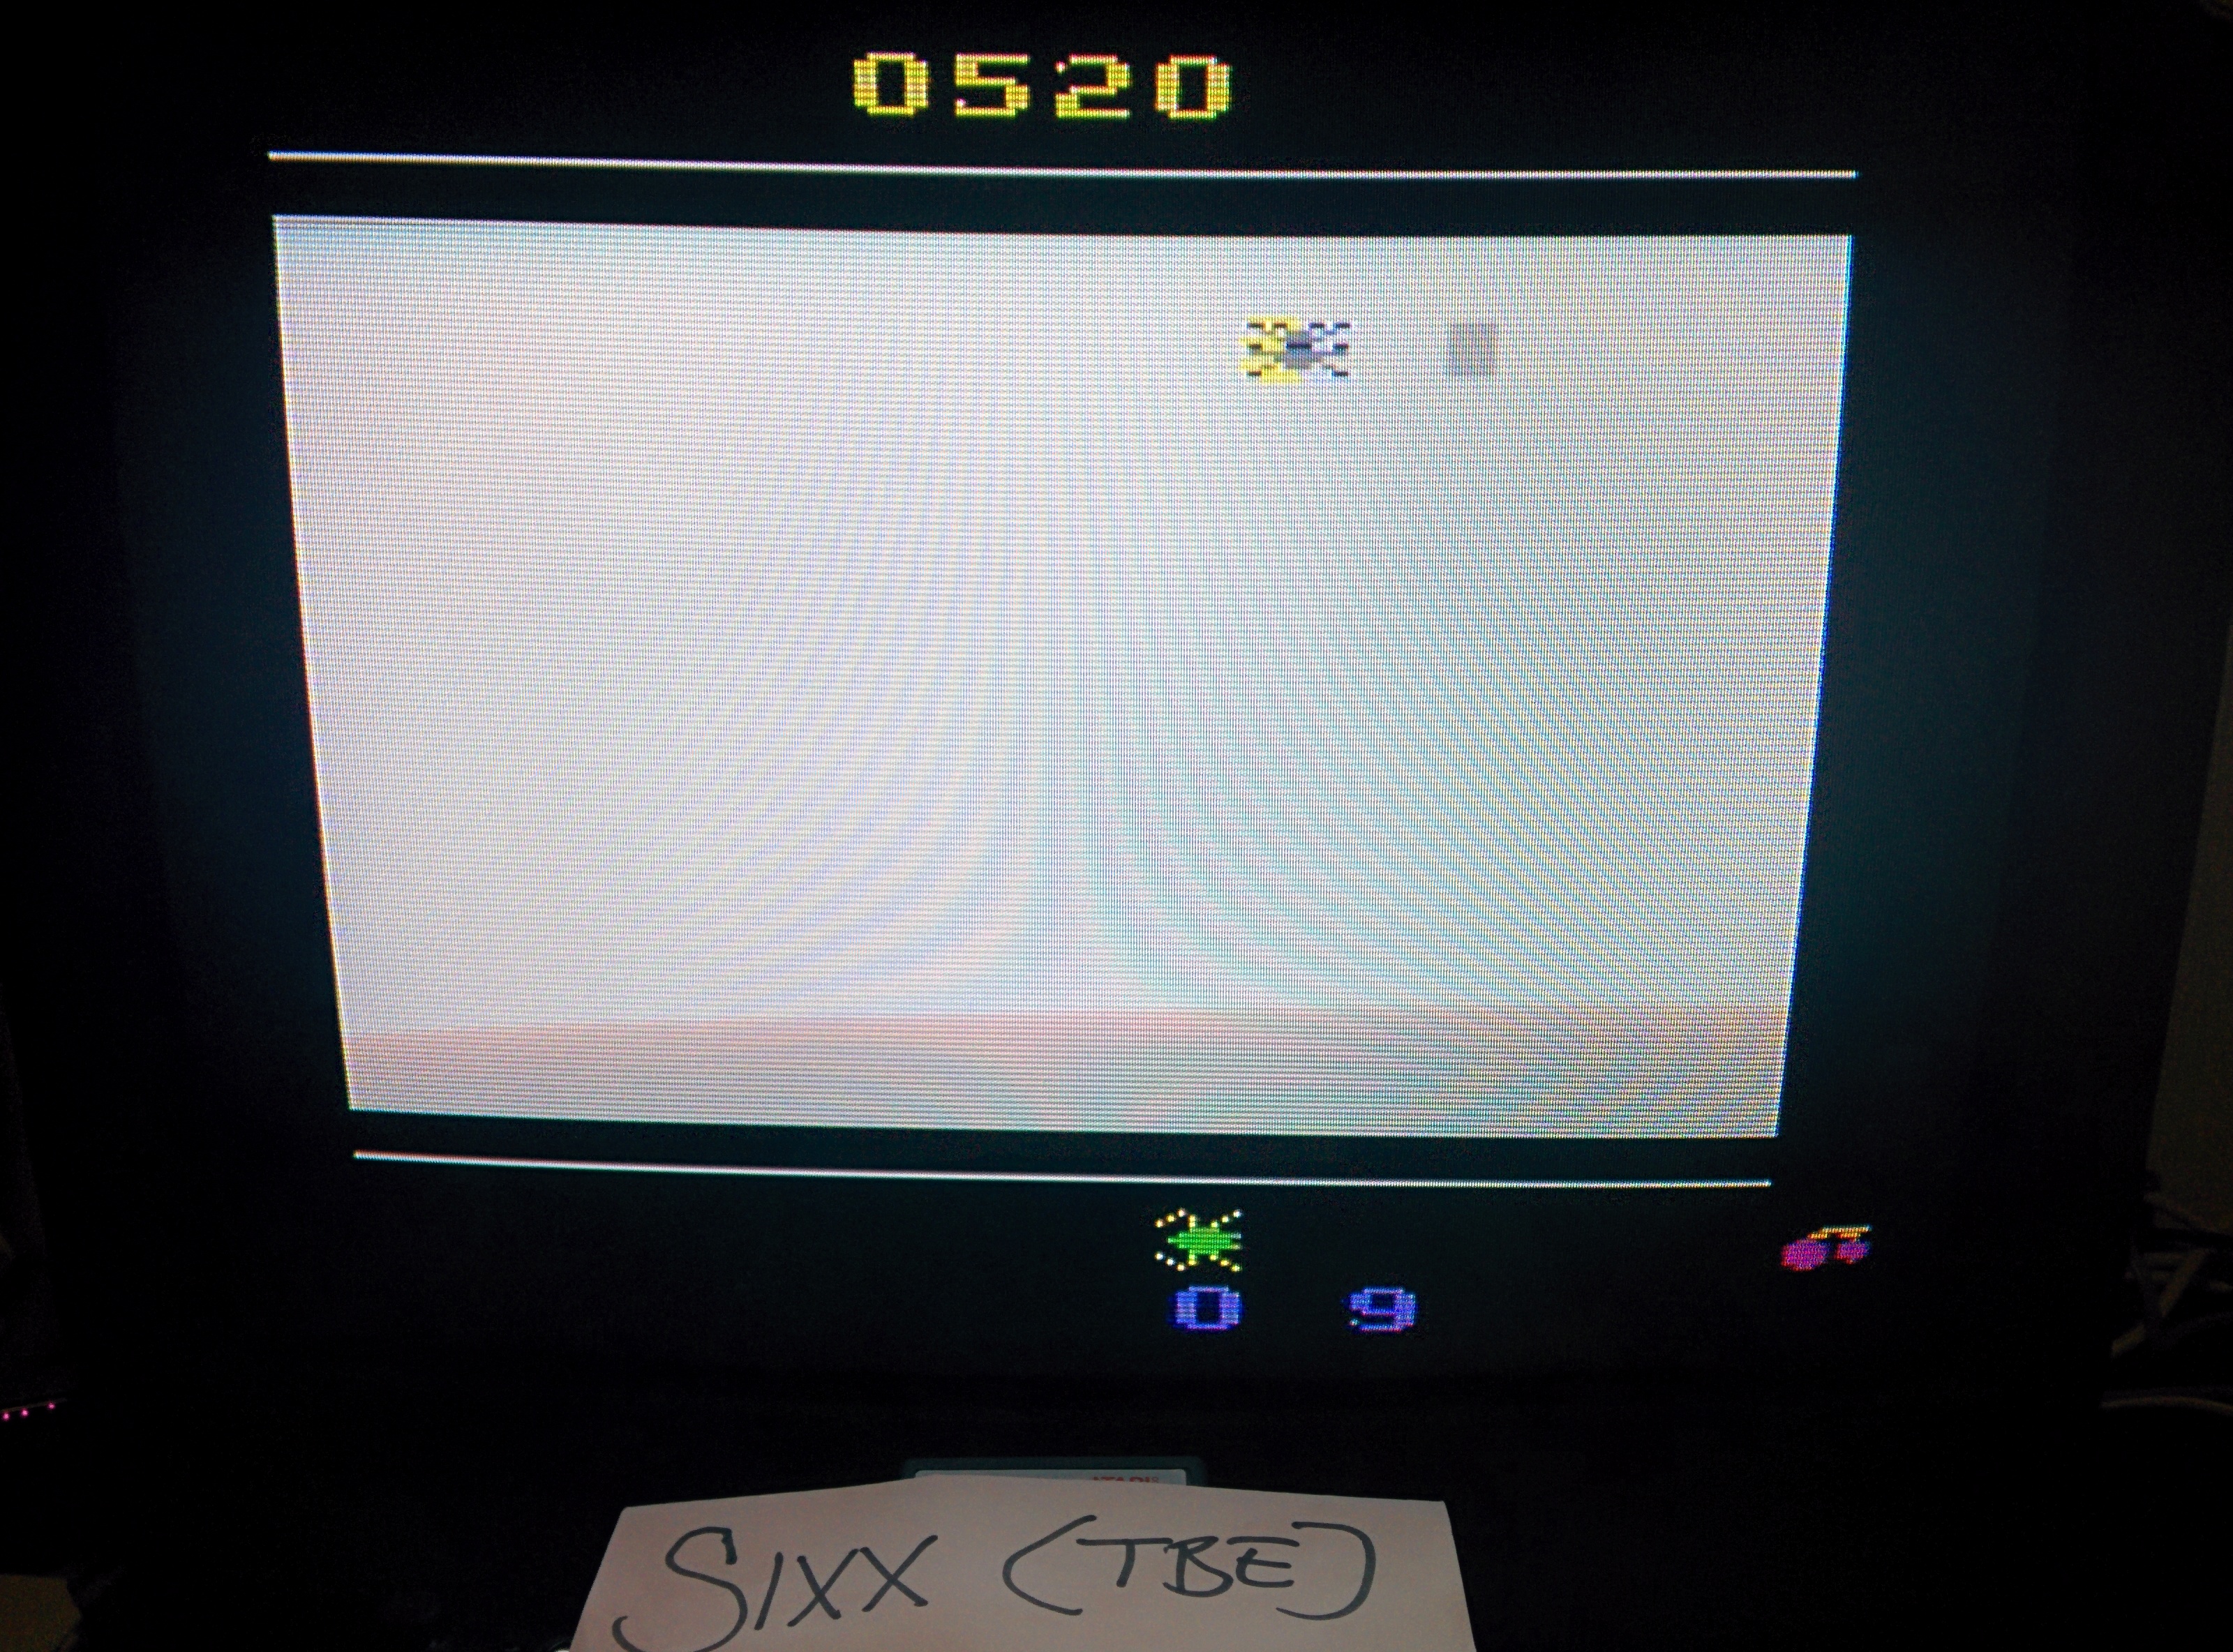 Sixx: Tapeworm (Atari 2600 Emulated Novice/B Mode) 520 points on 2014-07-28 15:34:06